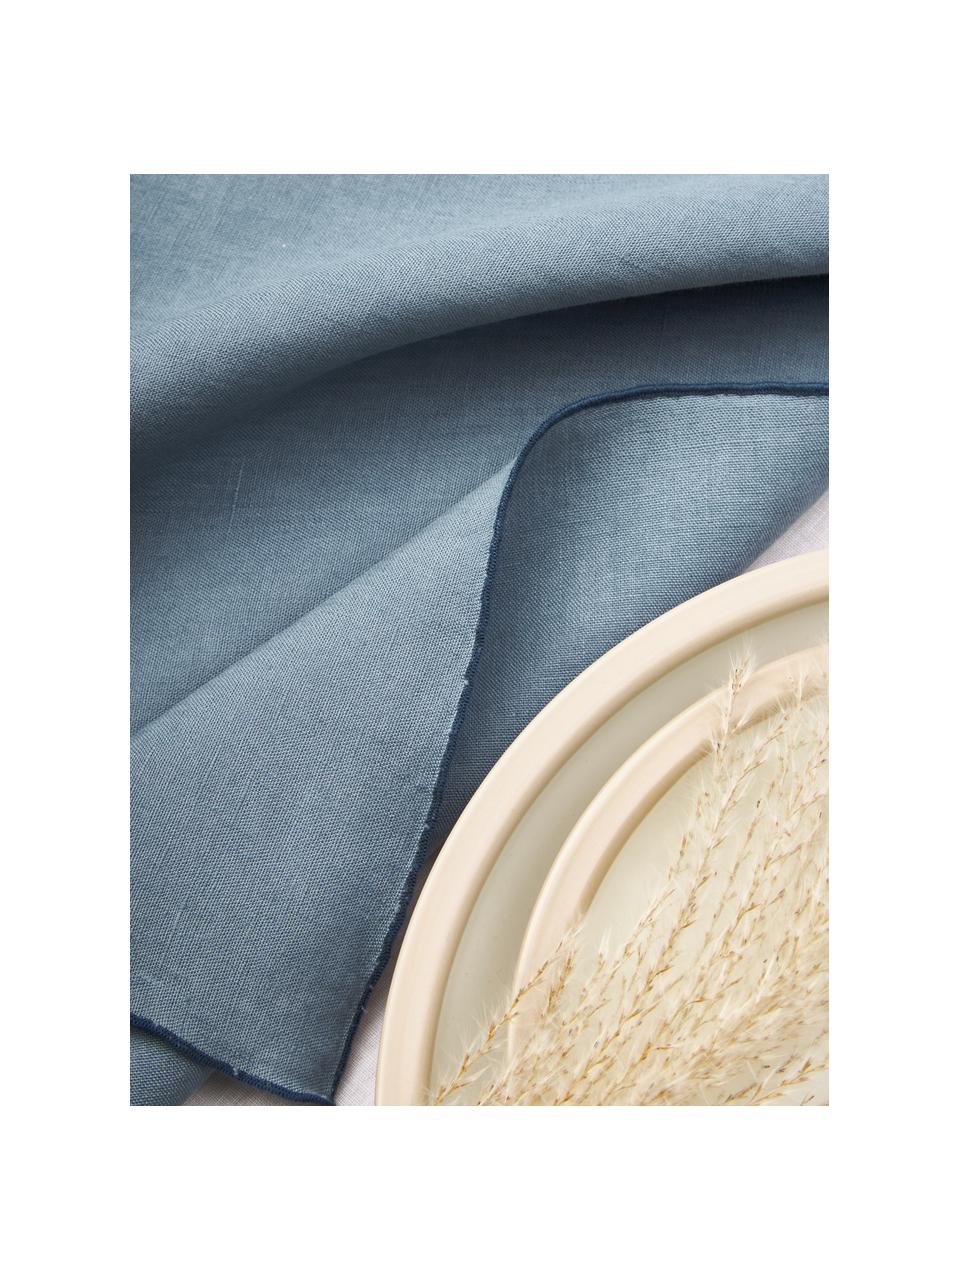 Serwetka z lnu Kennedy, 4 szt., 100% len prany z certyfikatem European Flax, Niebieski, S 45 x D 45 cm